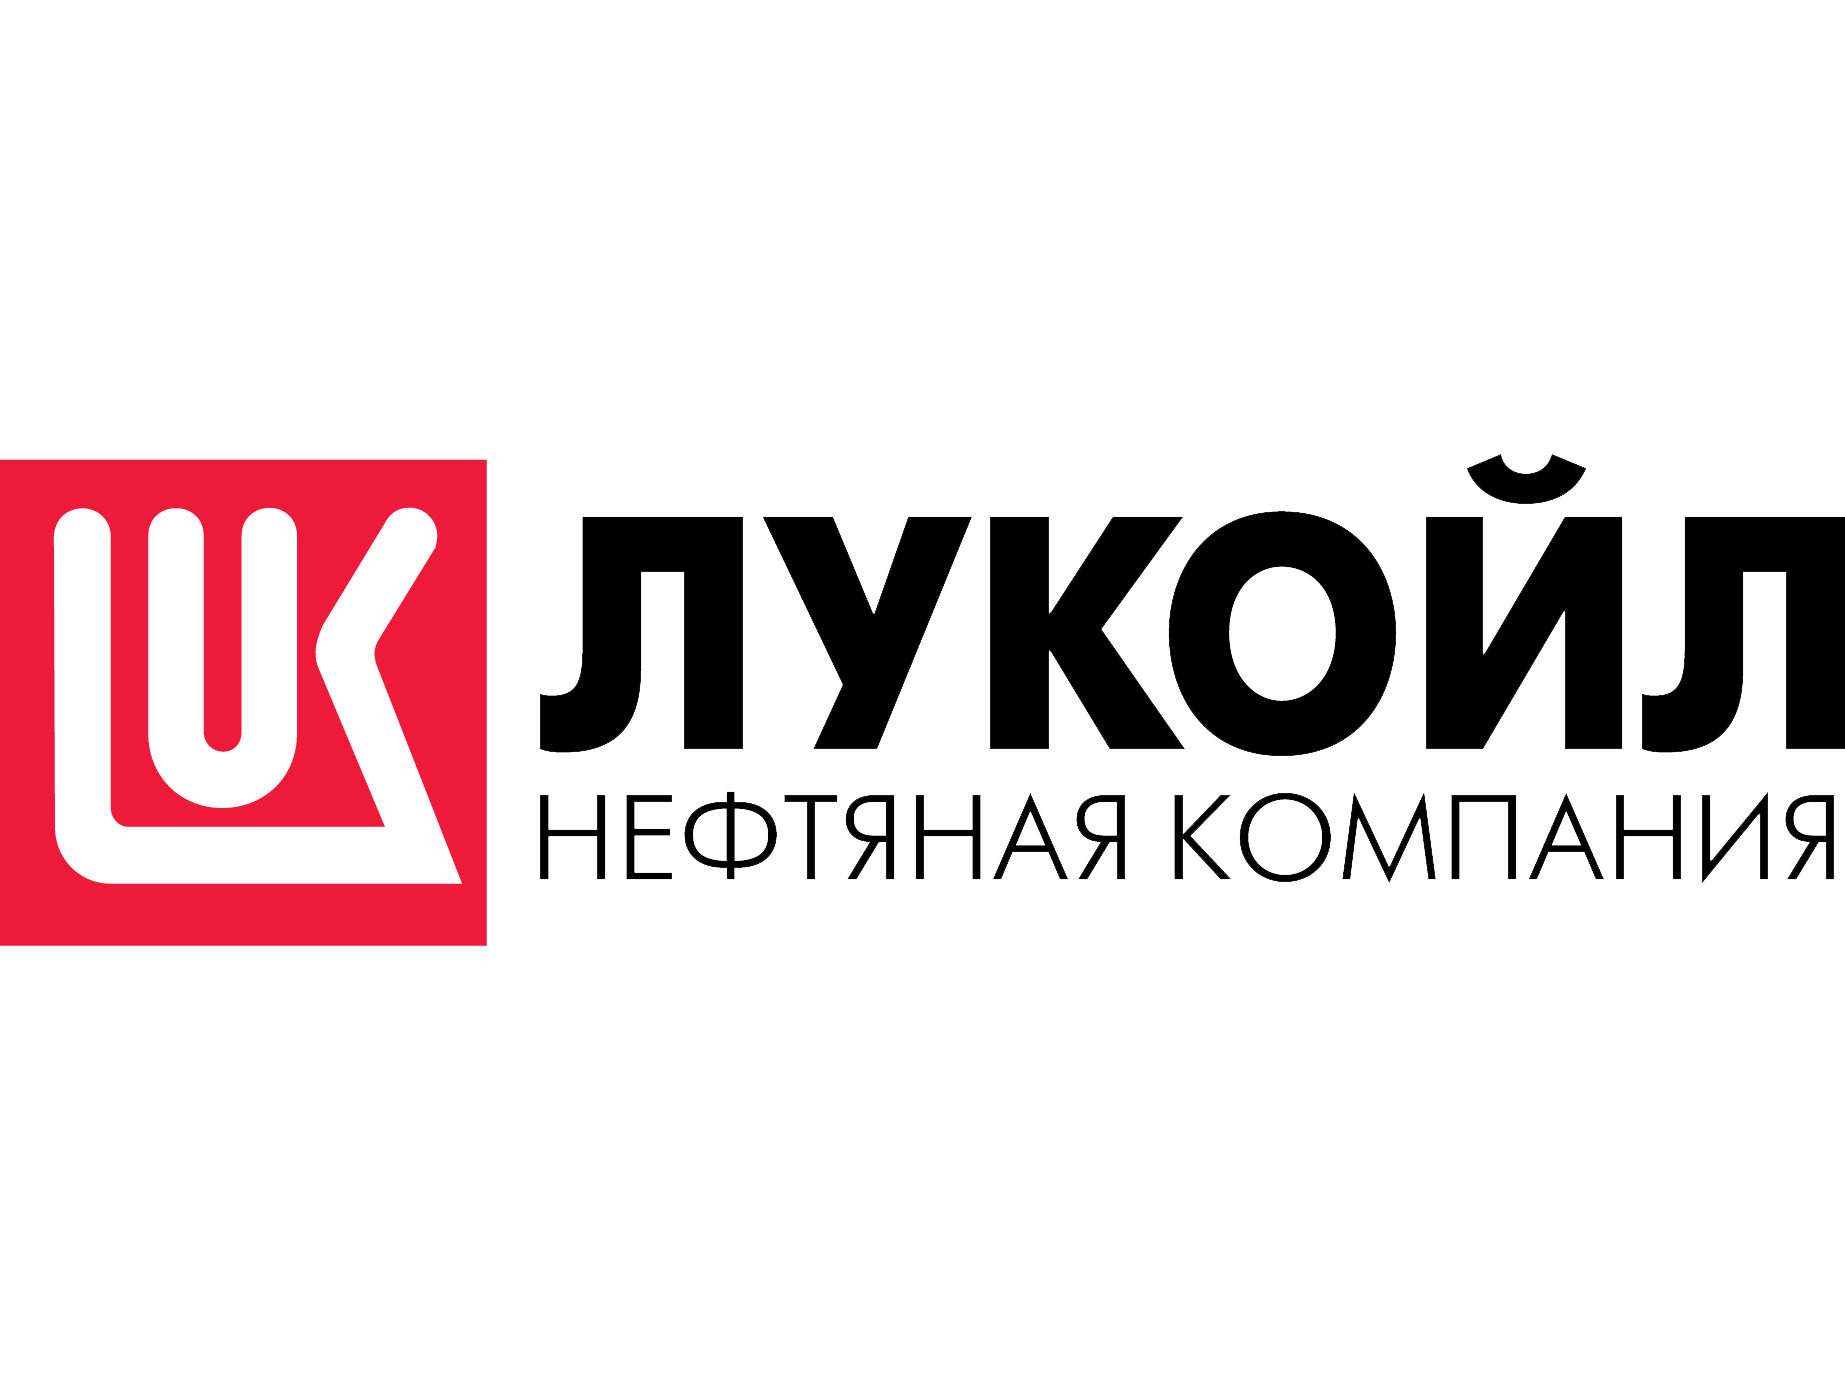 Lukoil Brand Logo